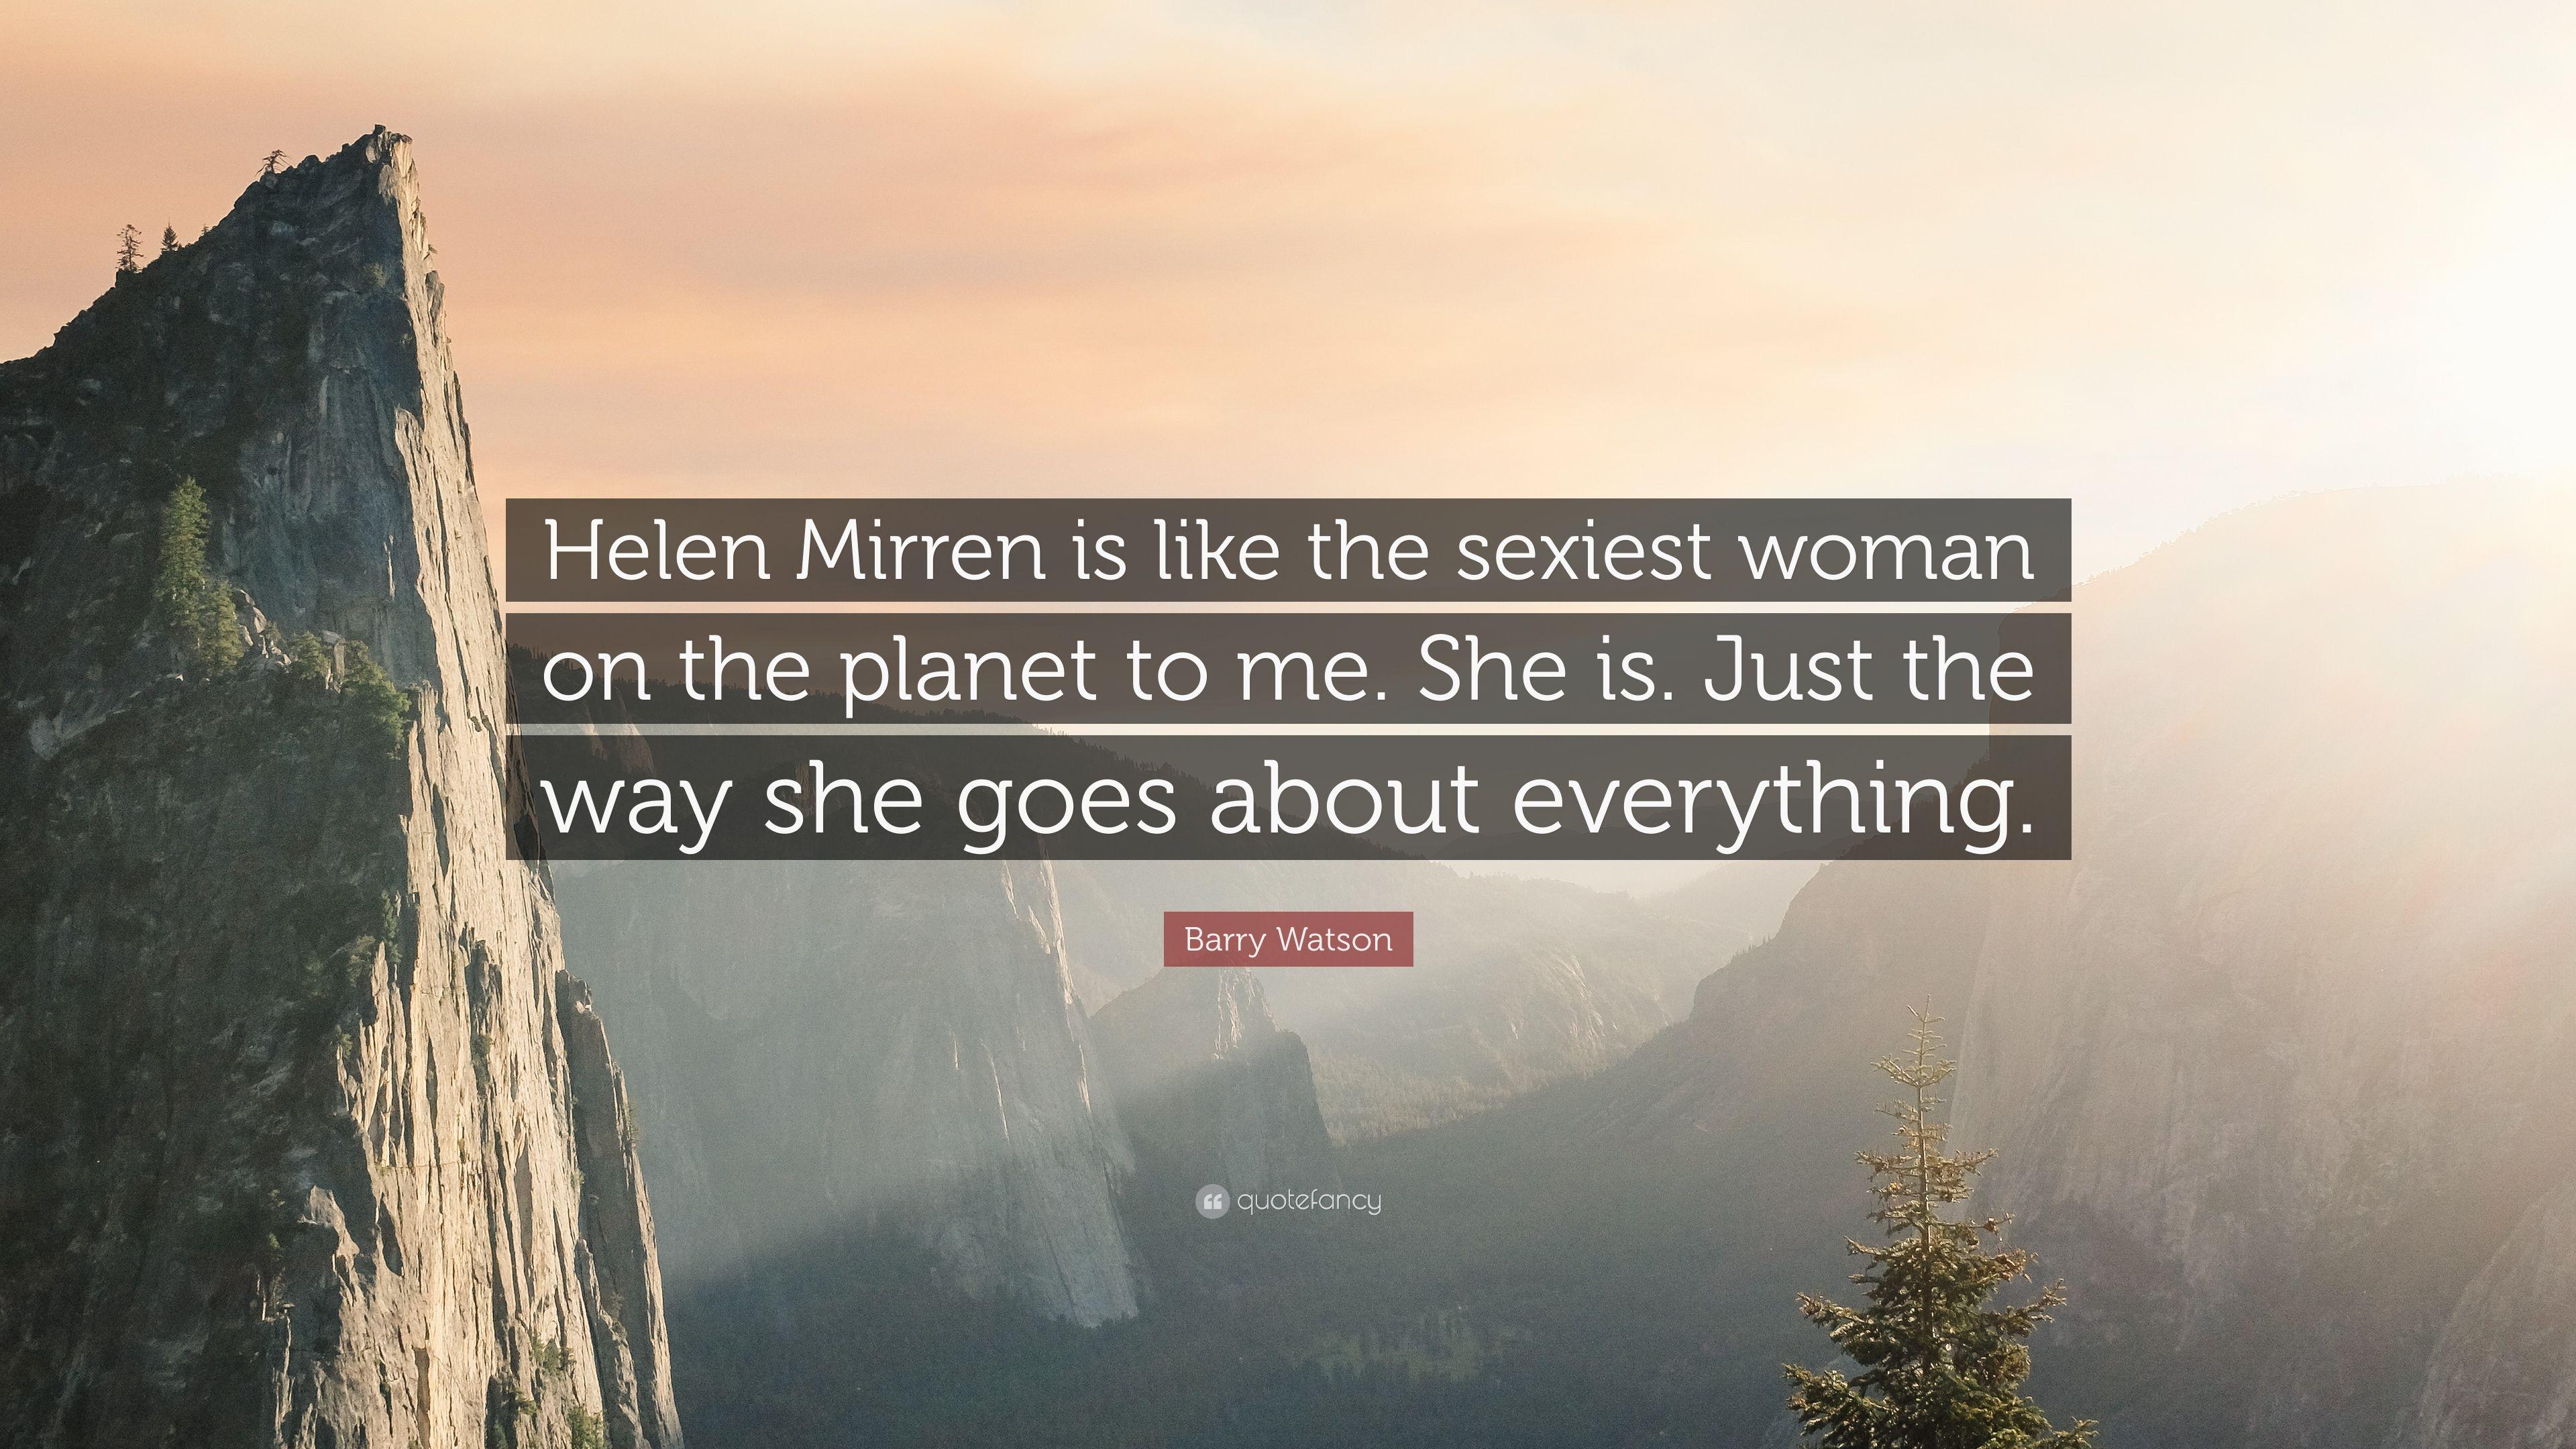 Barry Watson Quote: “Helen Mirren is like the woman on